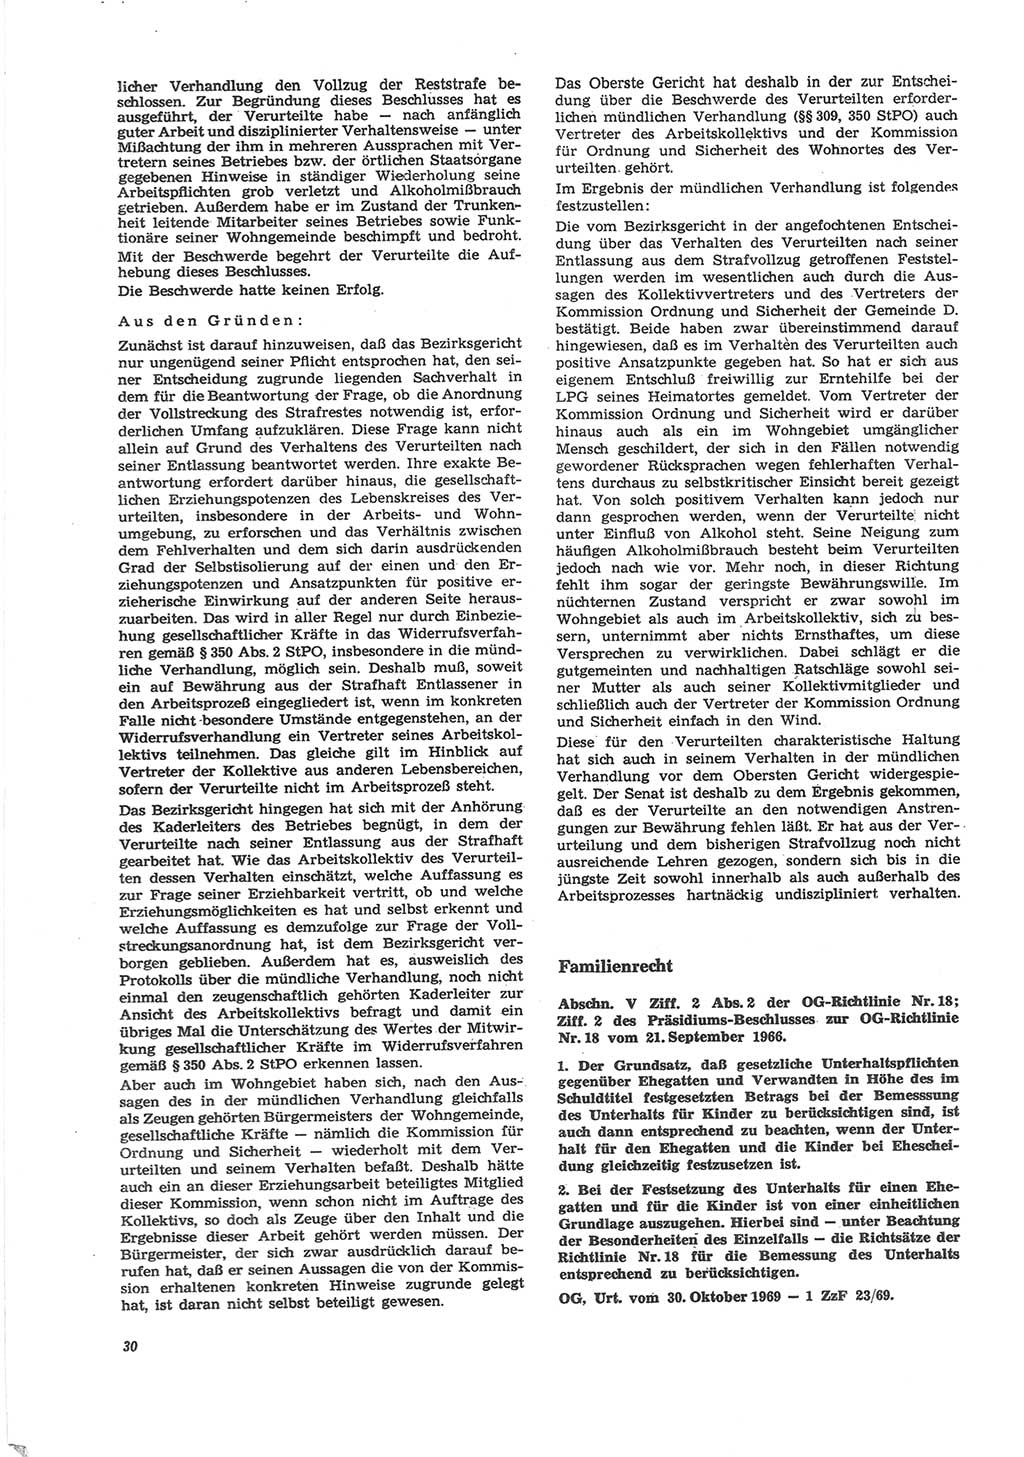 Neue Justiz (NJ), Zeitschrift für Recht und Rechtswissenschaft [Deutsche Demokratische Republik (DDR)], 24. Jahrgang 1970, Seite 30 (NJ DDR 1970, S. 30)